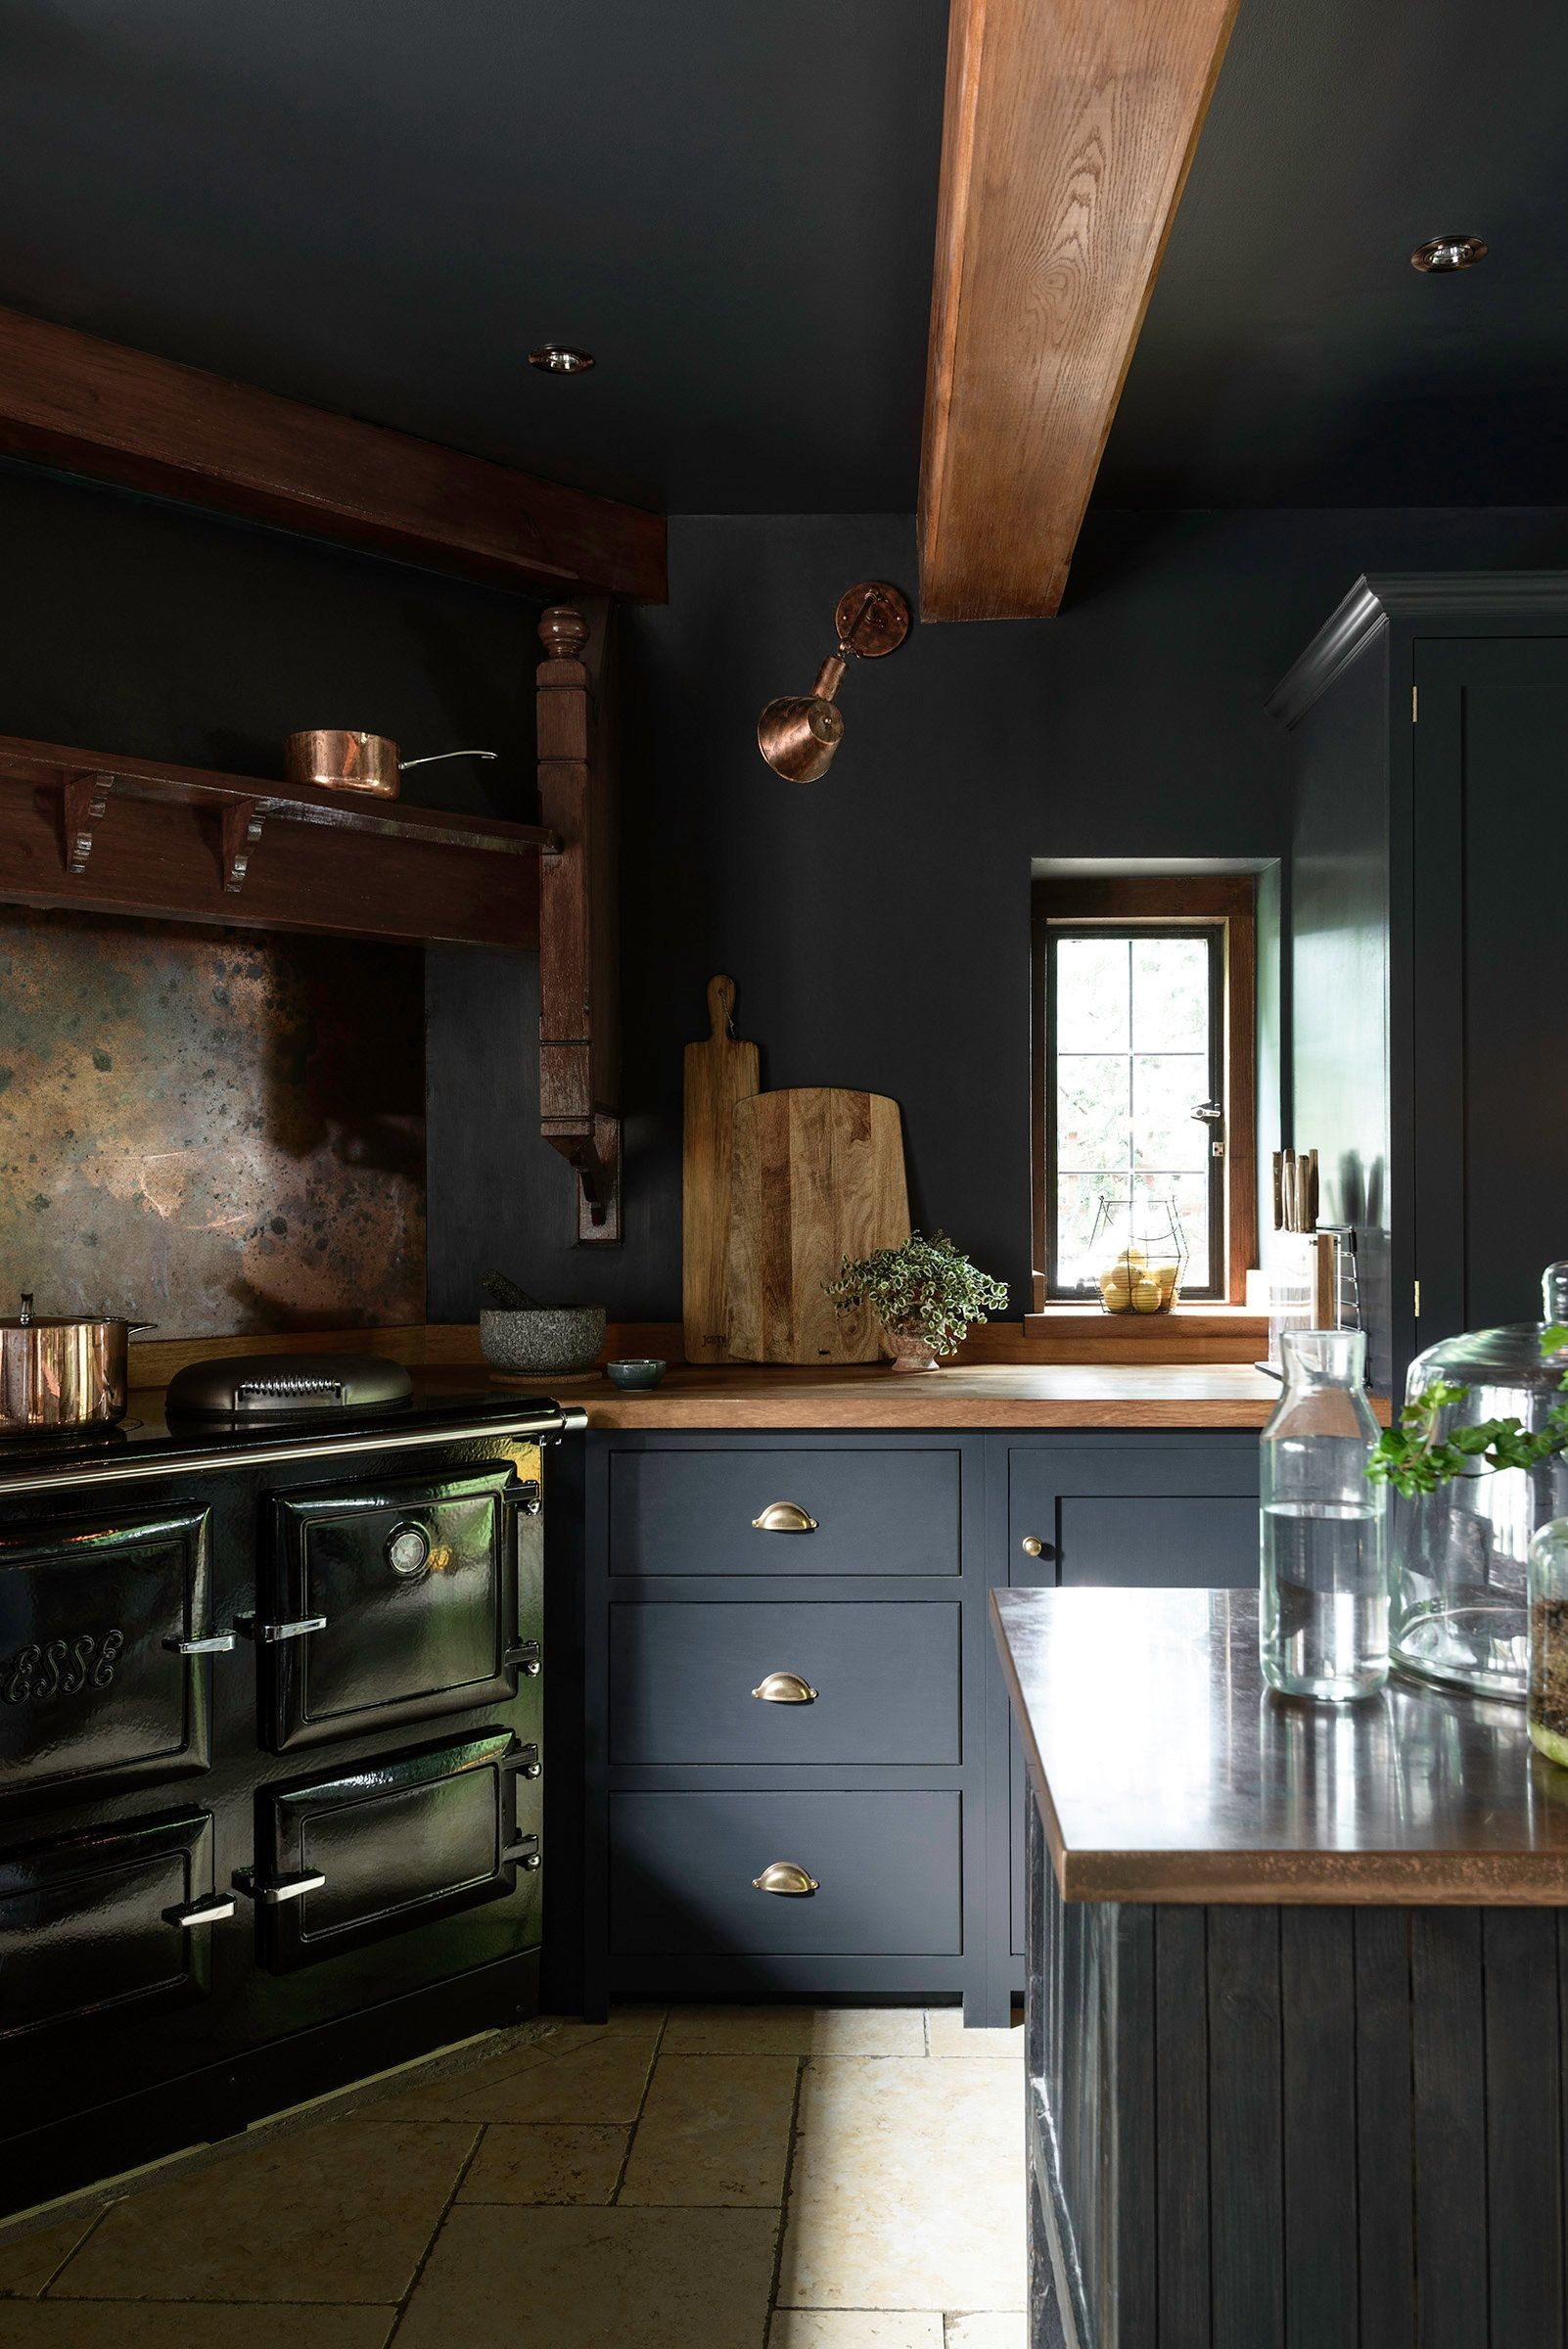 Cozinha gótica: ideias para usar preto na decoração do ambiente (Foto: reprodução)